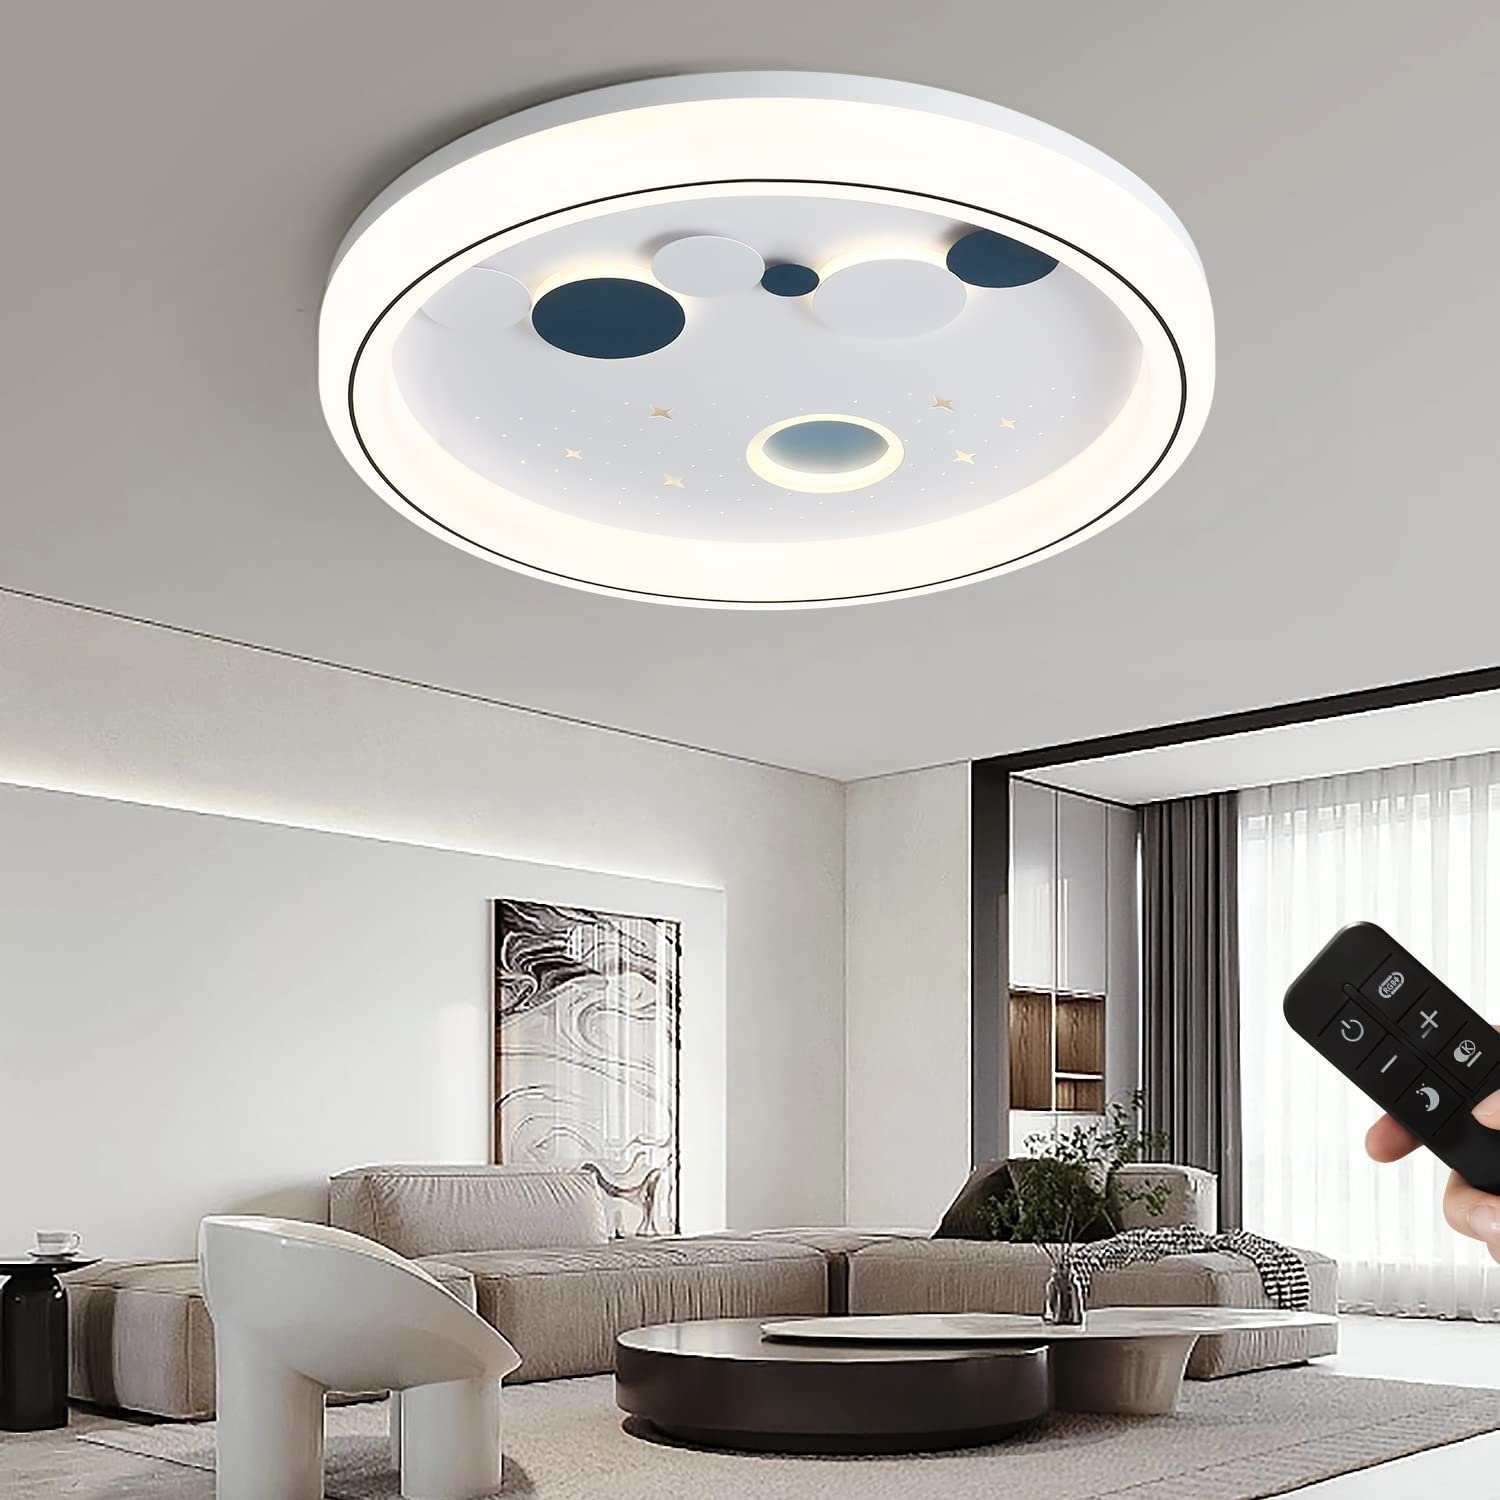 JDONG LED Deckenleuchte Dimmbar mit Fernbedienung 72W Modern Stern-Mond Design, LED fest integriert, Kaltweiß, Warmweiß, Neutralweiß, Farbtemperatur Stufenlos Einstellbar 3000-6500K, für Schlafzimmer Esszimmer Wohnzimmer